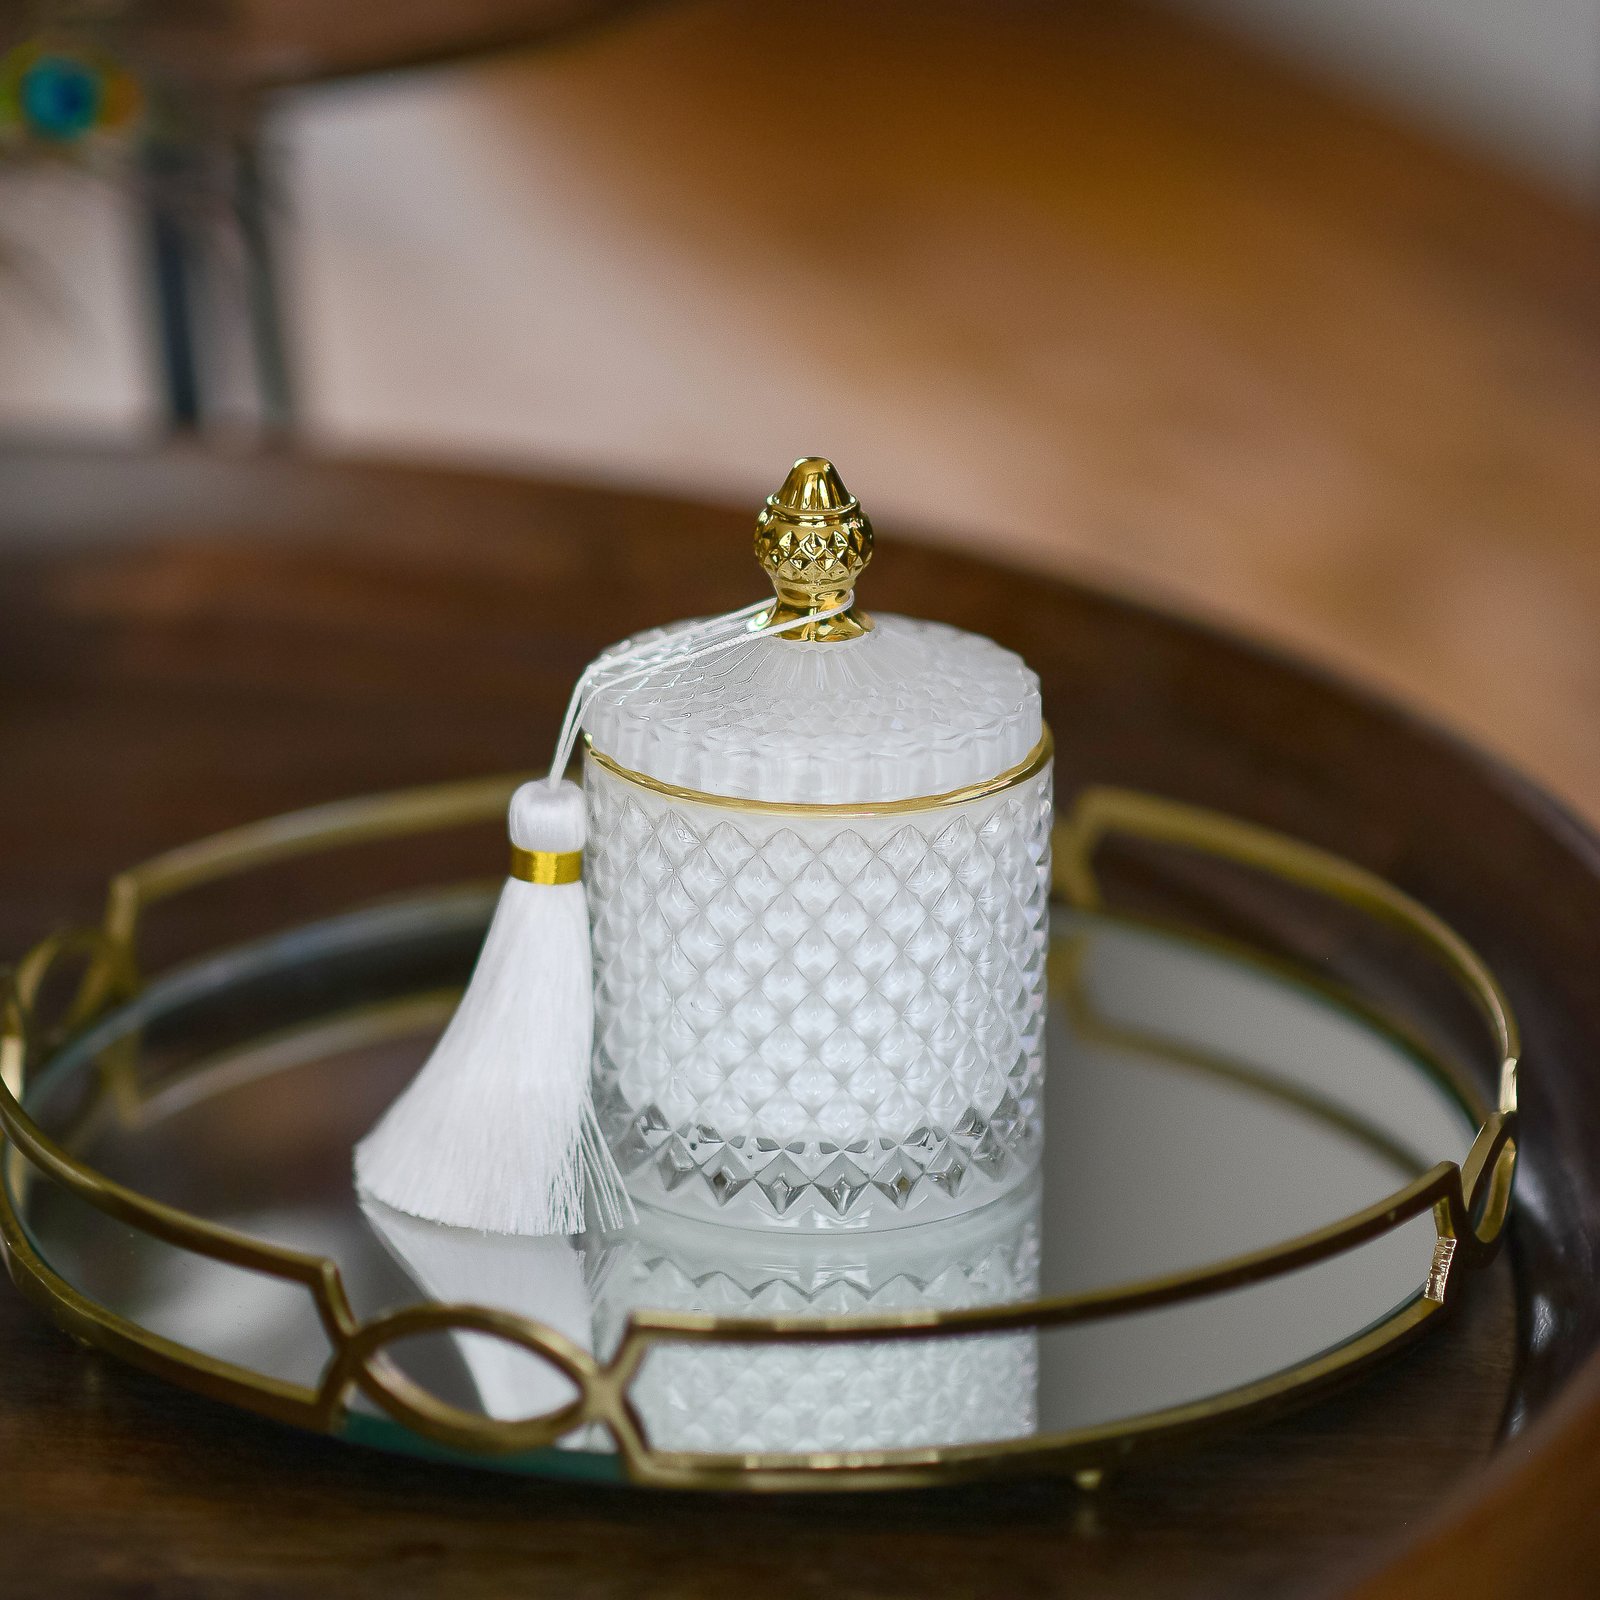 Prabangi kvapnioji žvakė „Royal“, L dydis (balta, auksas)_Pagrindinė nuotrauką